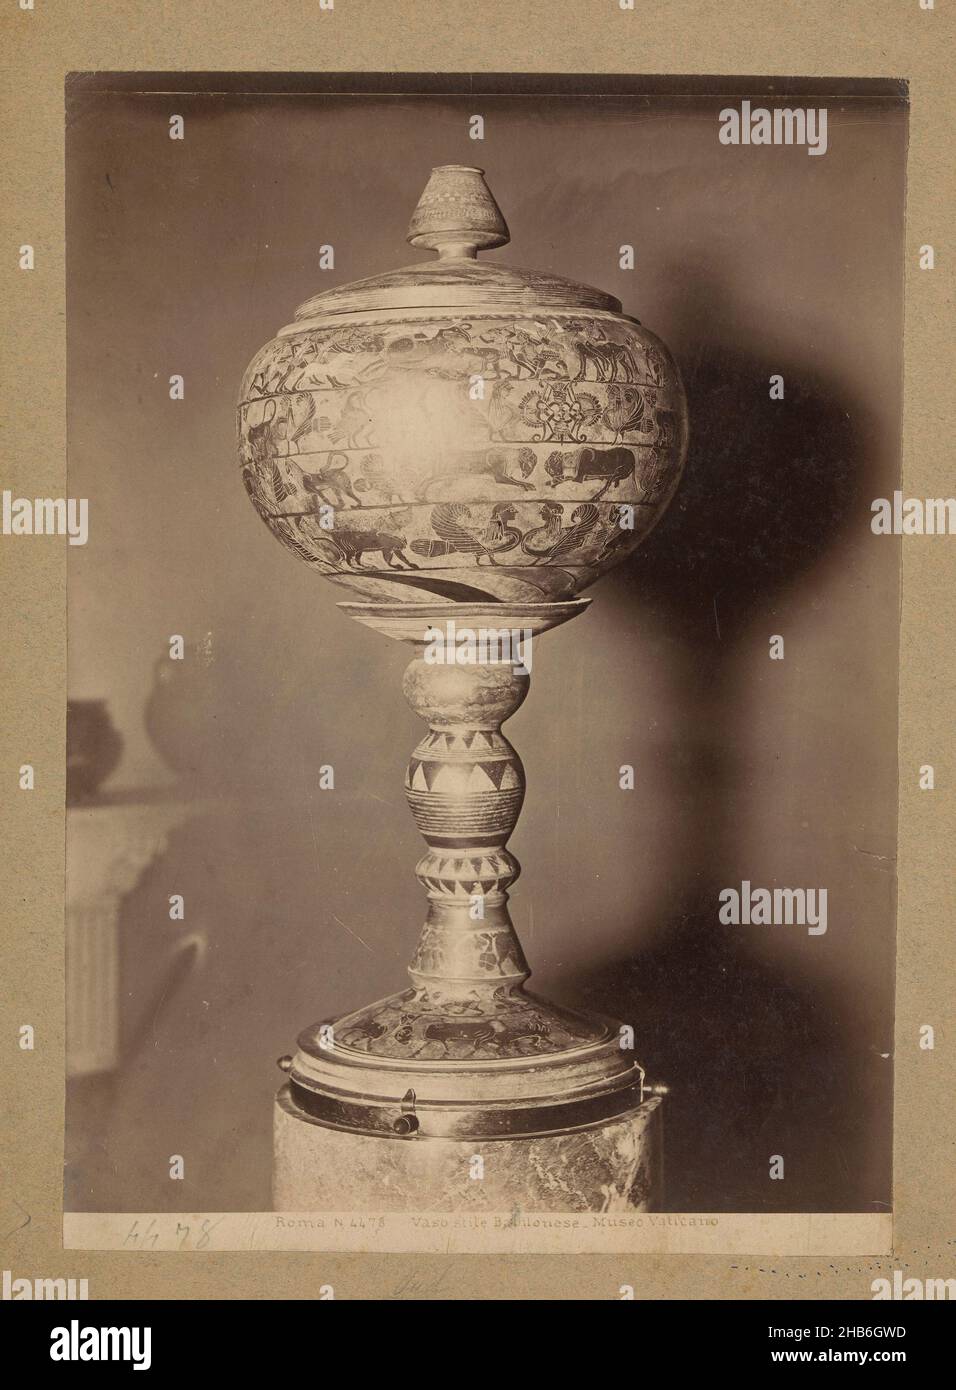 Kugelförmige Vase auf einem Sockel mit sagenhaften Tieren verziert, Roma Vaso stile Babilonese-Museo Vaticano, anonym, Rom, c. 1875 - c. 1900, Karton, Albumin-Print, Höhe 270 mm × Breite 190 mm Stockfoto